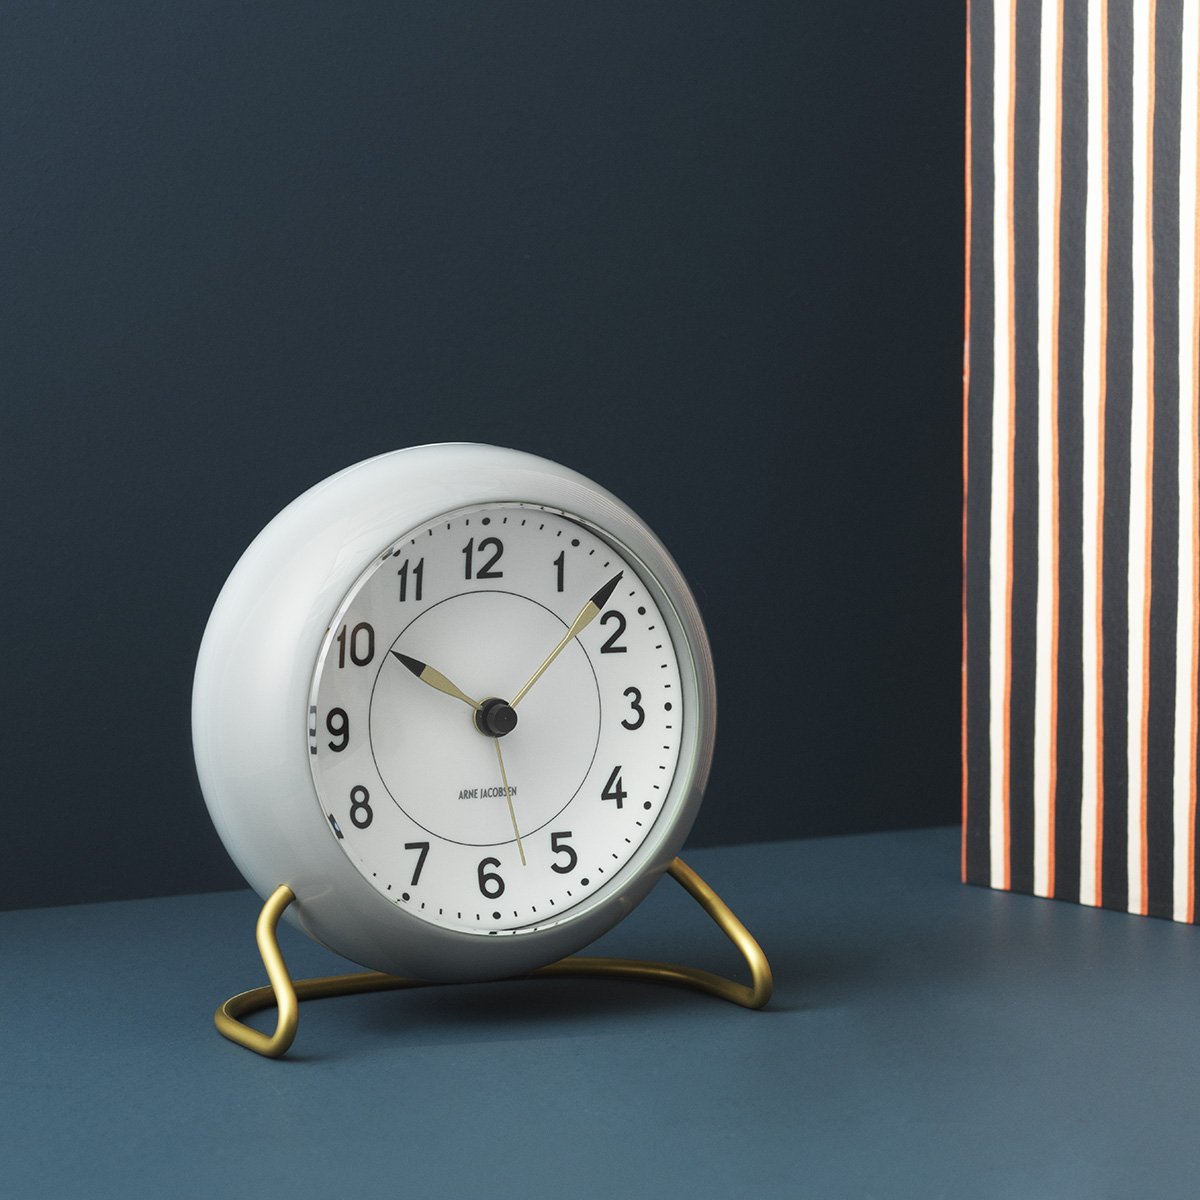 Arne Jacobsen stasjonsbordklokke med alarmgrått og hvitt, 12cm